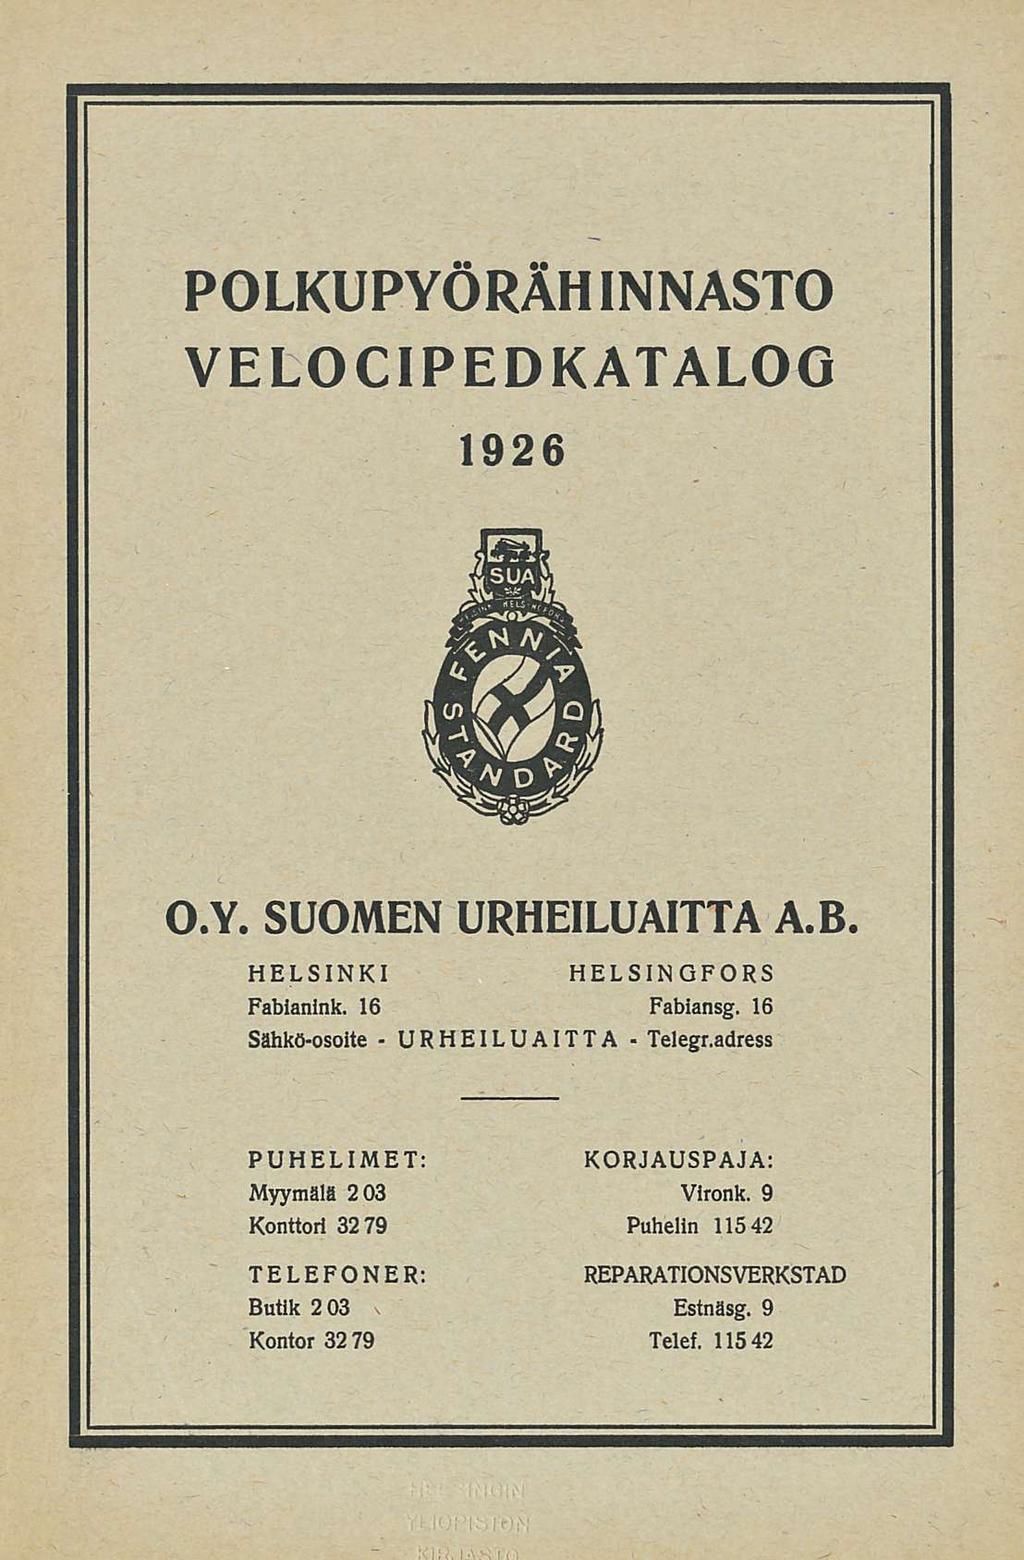 POLKUPYÖRÄHINNASTO 1926. VELOCIPEDKATALOG 1926. 1926 O.Y. SUOMEN URHEILUAITTA A. B. HELSINKI Fabianink. 16 Sähkö-osoite - HELSINGFORS Fabiansg.